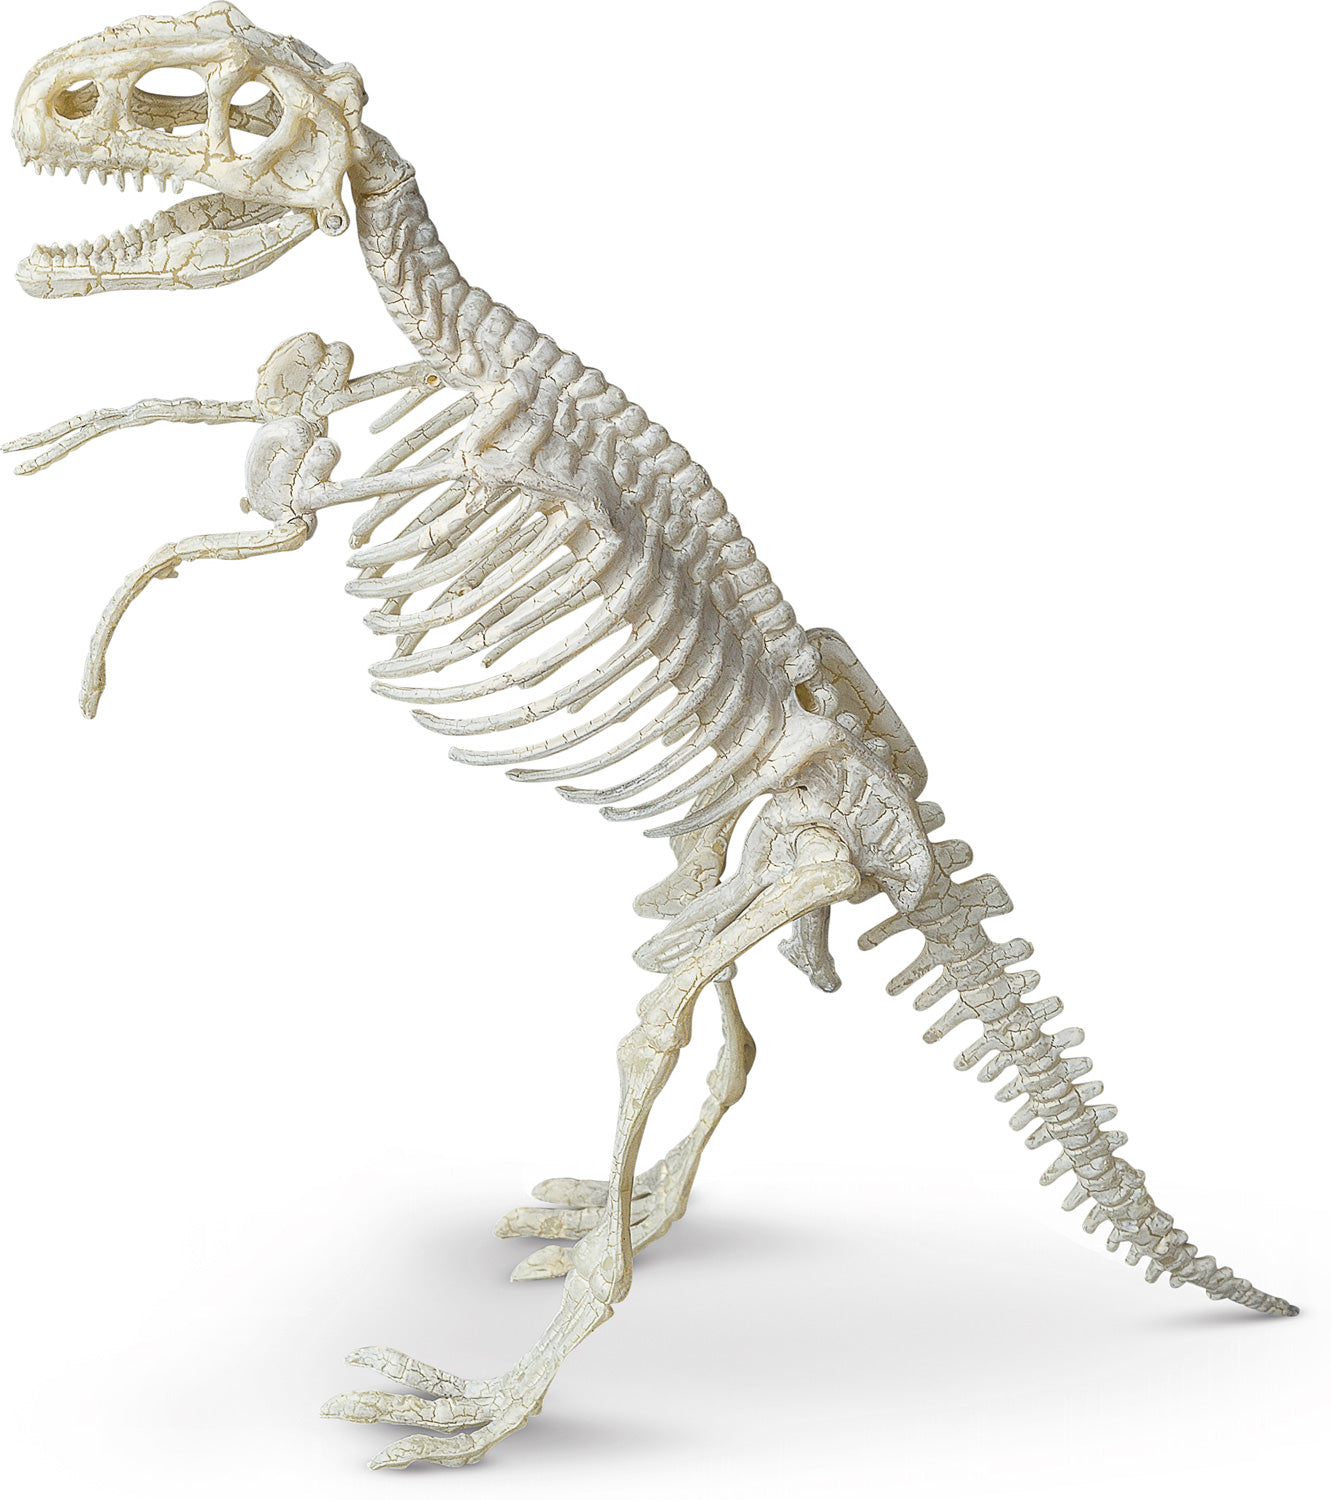 Tyrannosaurus Paleontology Kit